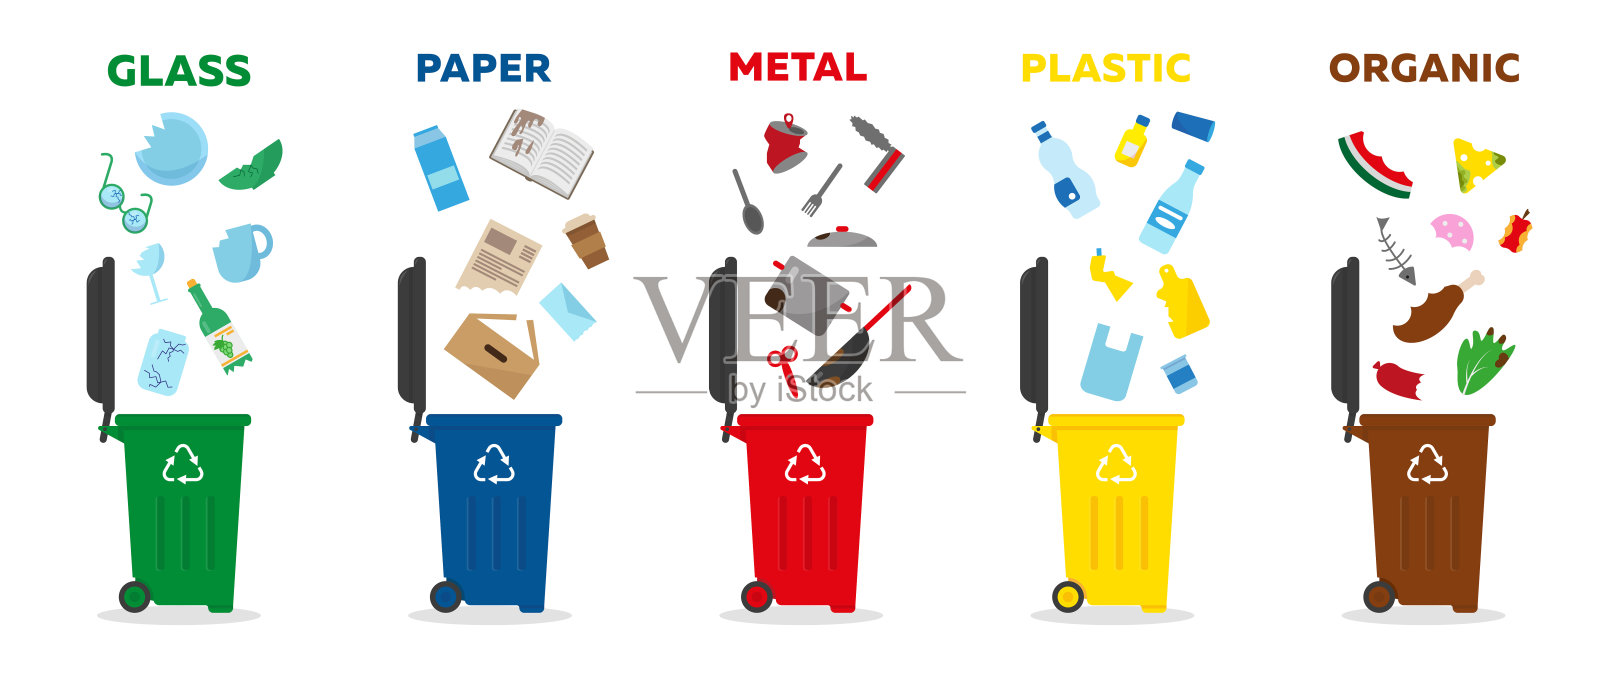 不同类型的垃圾:玻璃、纸张、金属、塑料和有机。用于分类和回收的彩色垃圾桶。废物管理概念矢量插图。设计元素图片